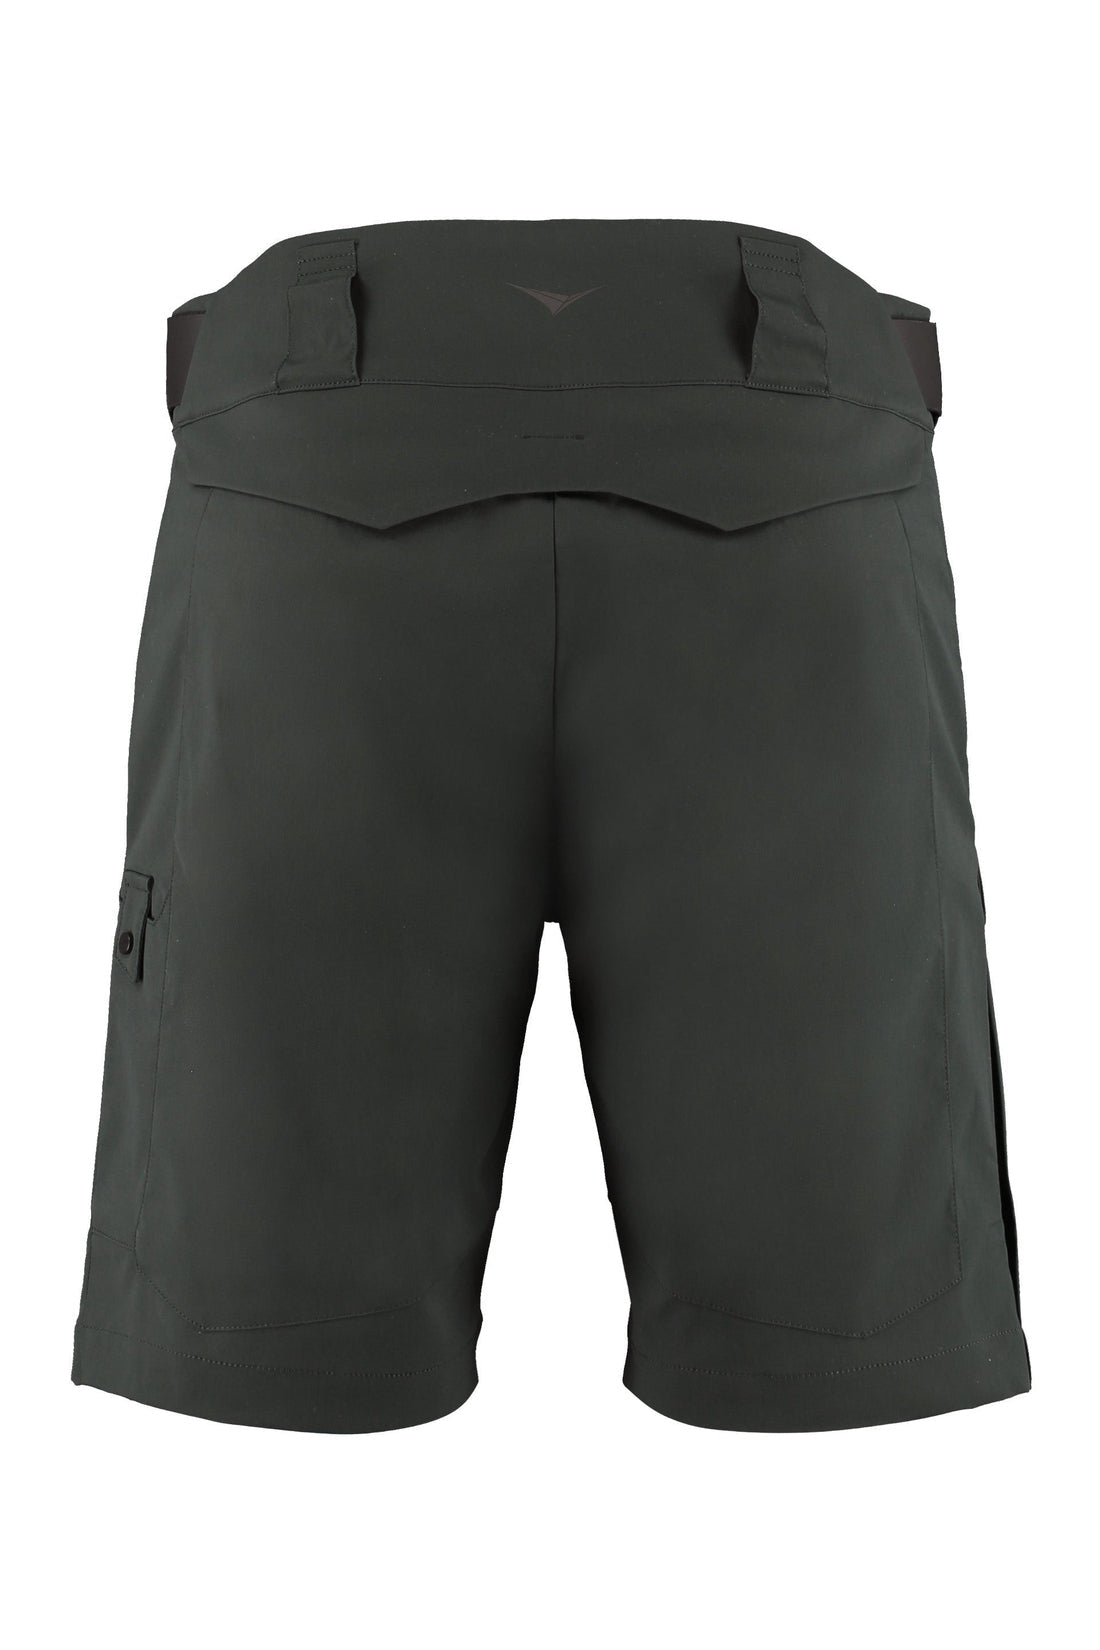 Sease-OUTLET-SALE-Cotton shorts-ARCHIVIST